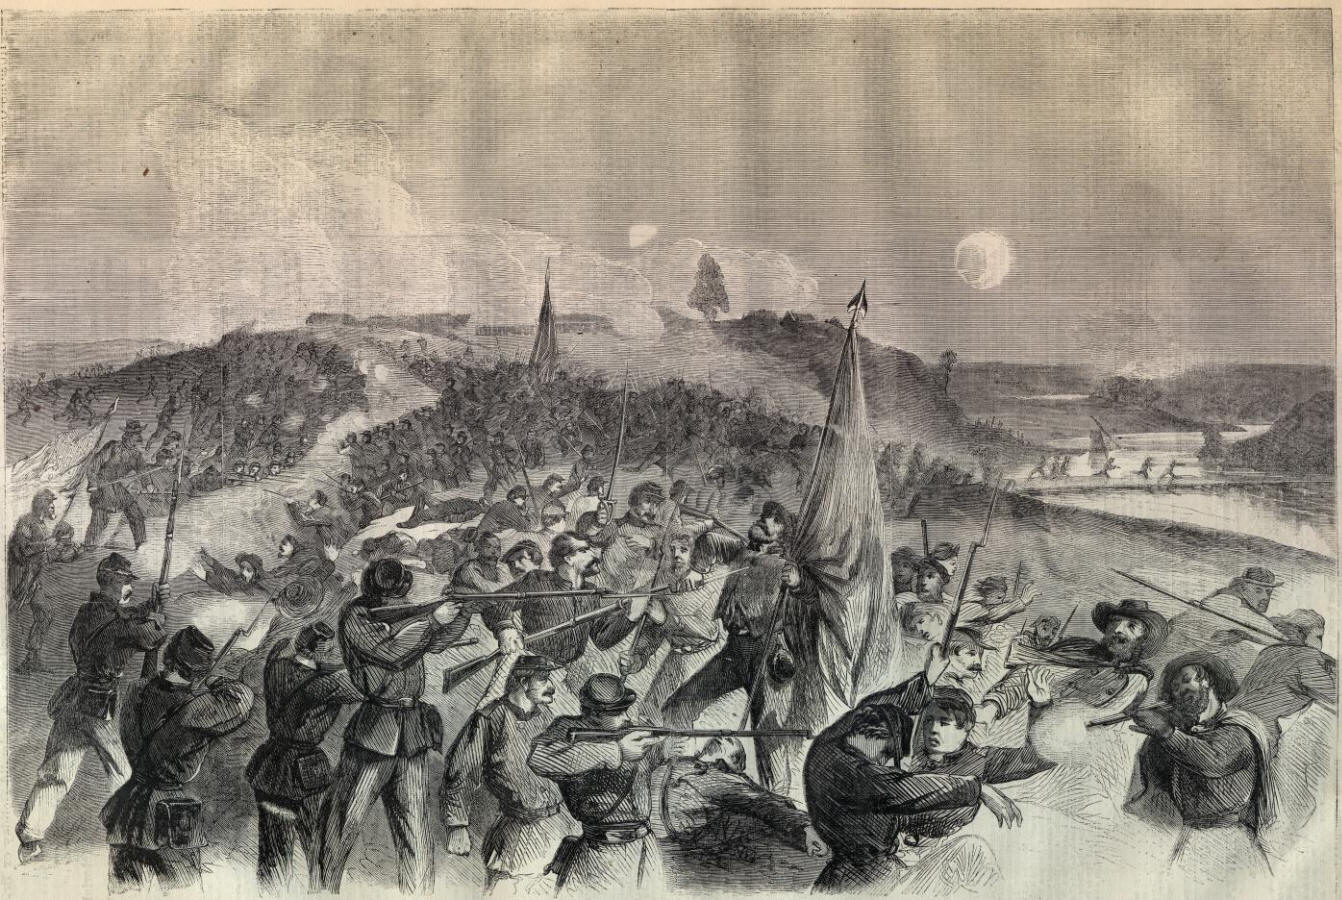 Battle on the Rappahannock